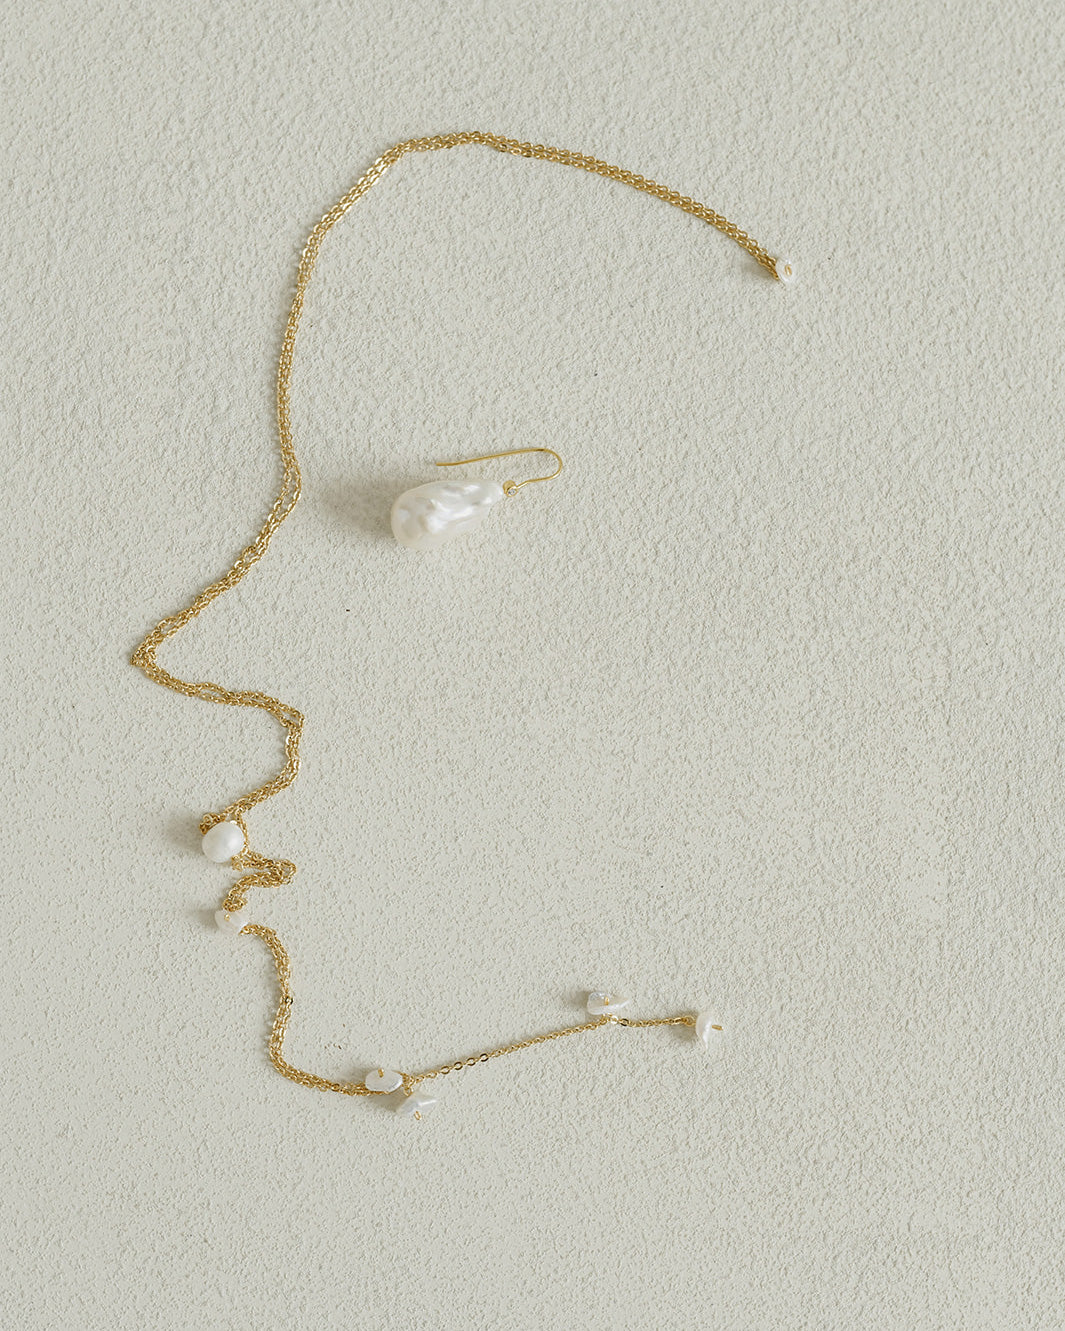 photo artistique de bijoux de mariage en chaine et perle naturelles sur un fond blanc 